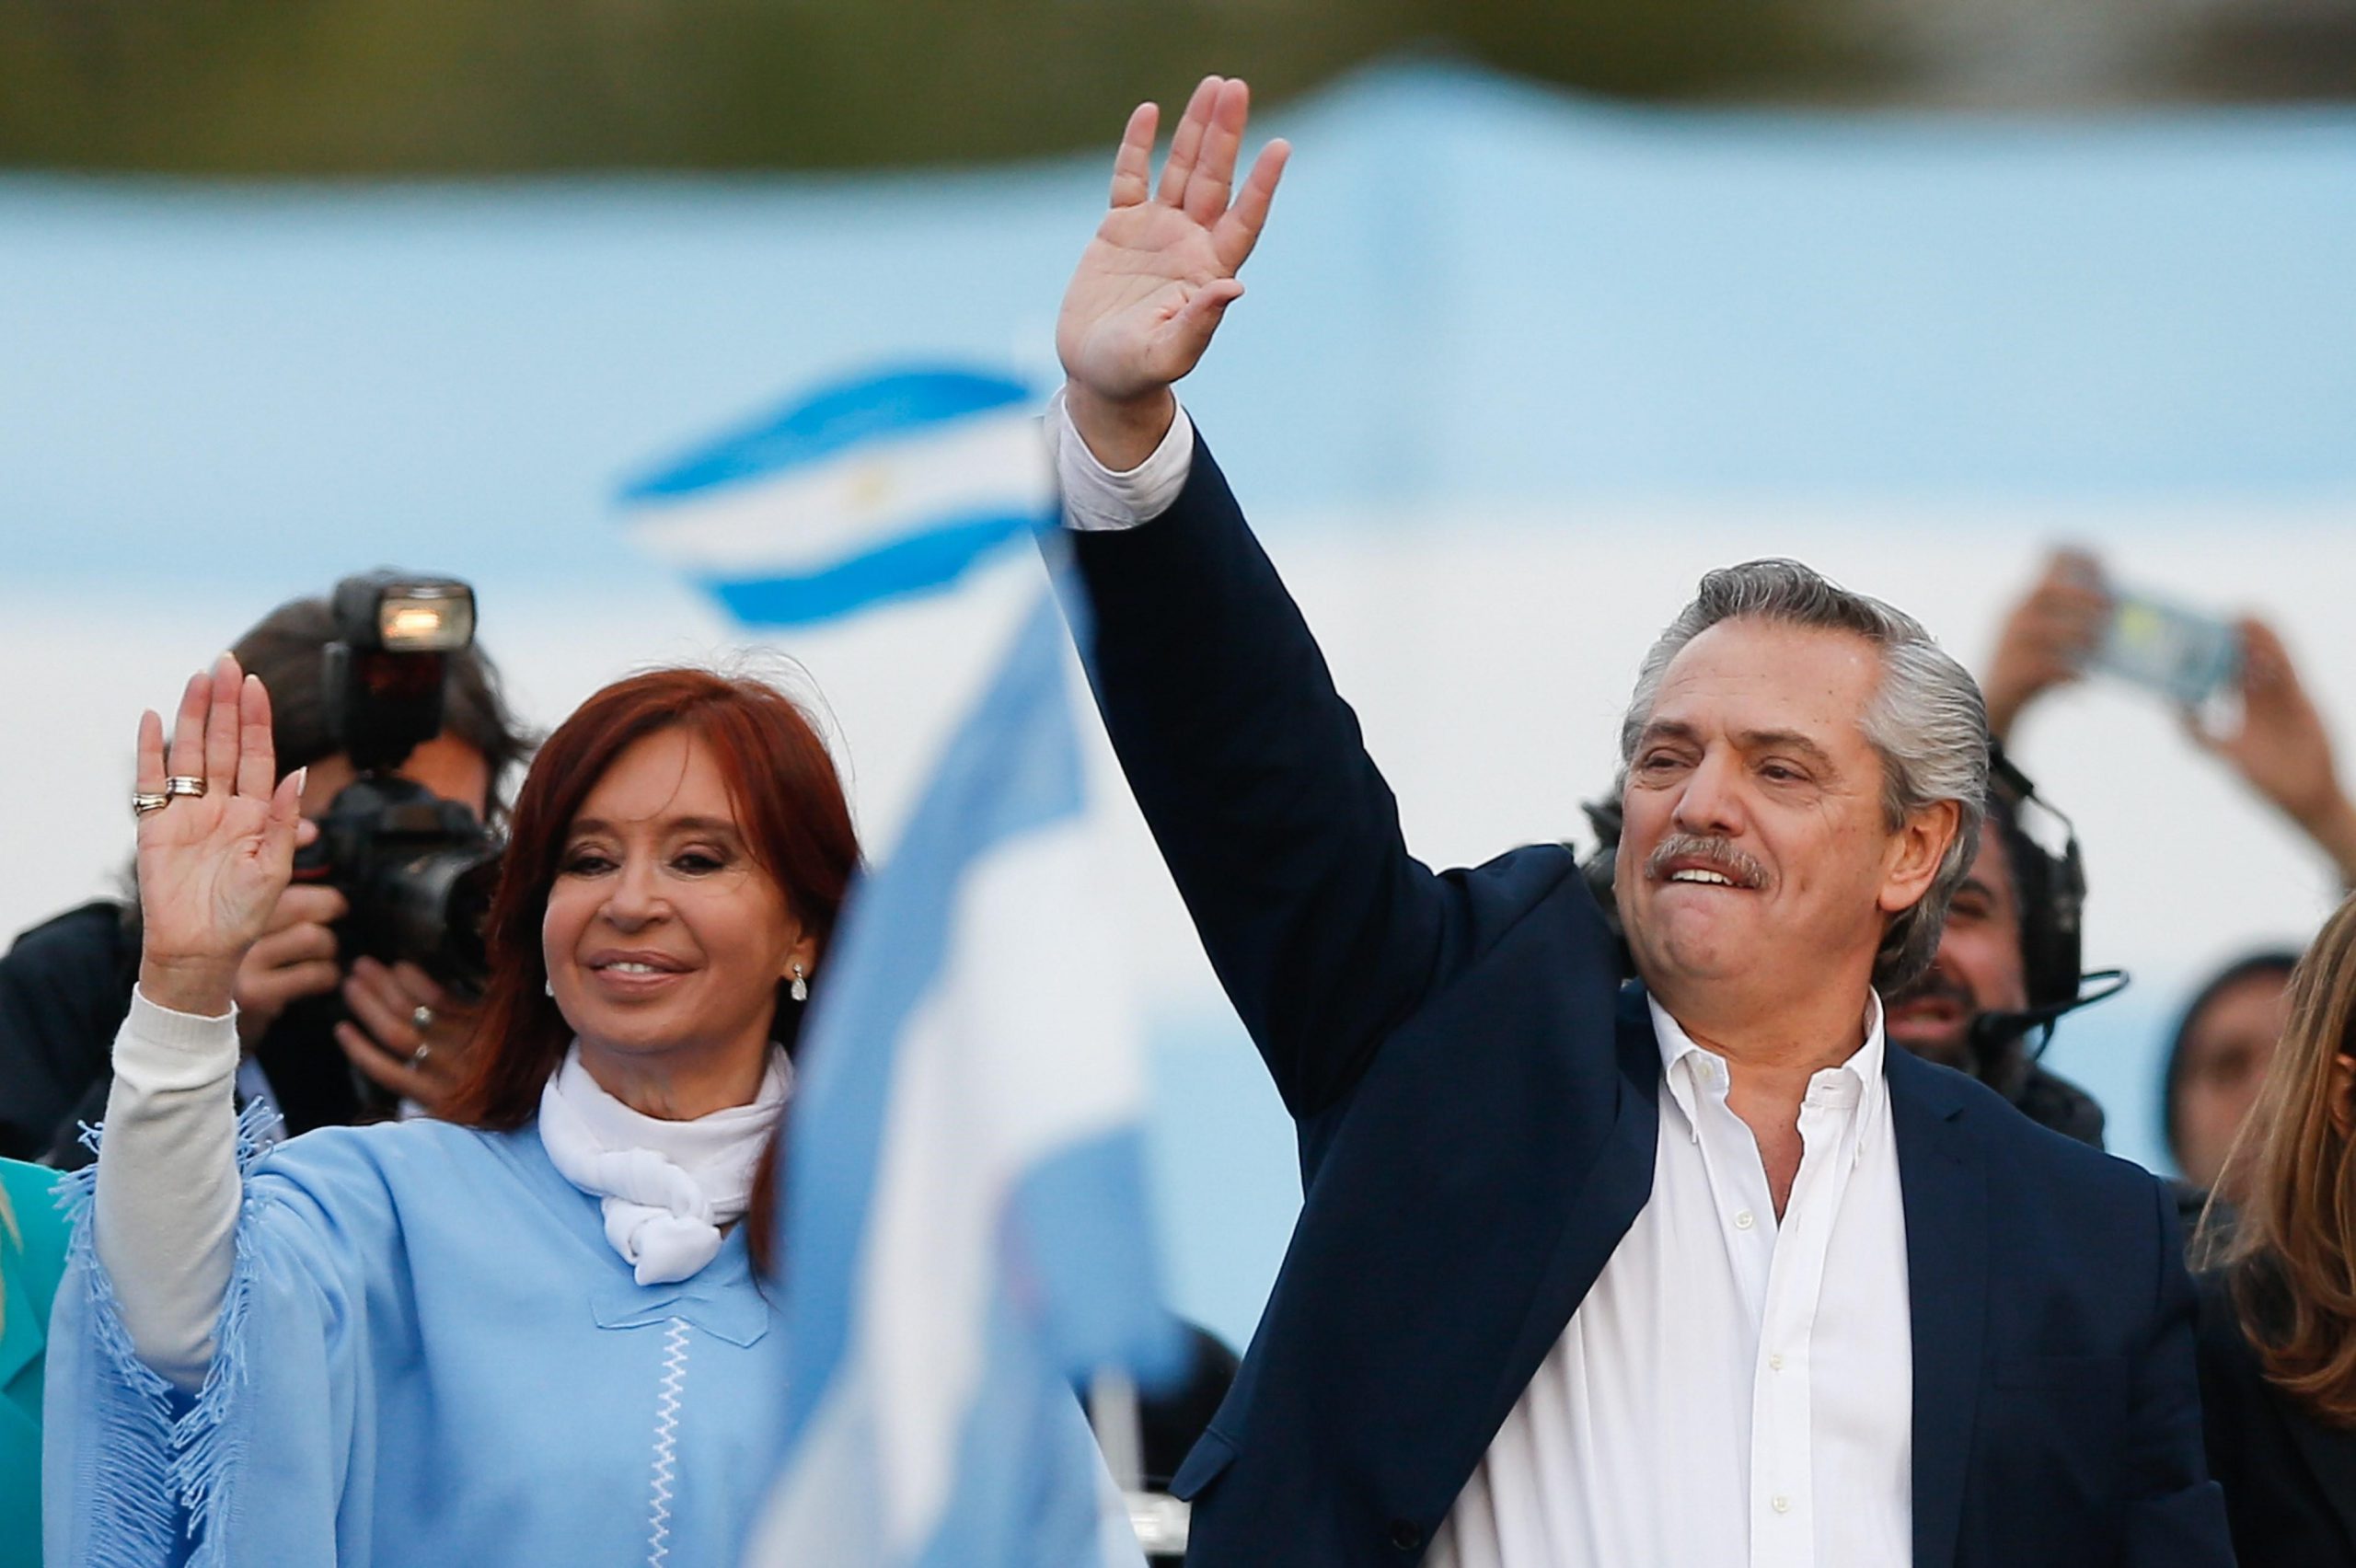 Alberto Fernández, nouveau président de l'Argentine